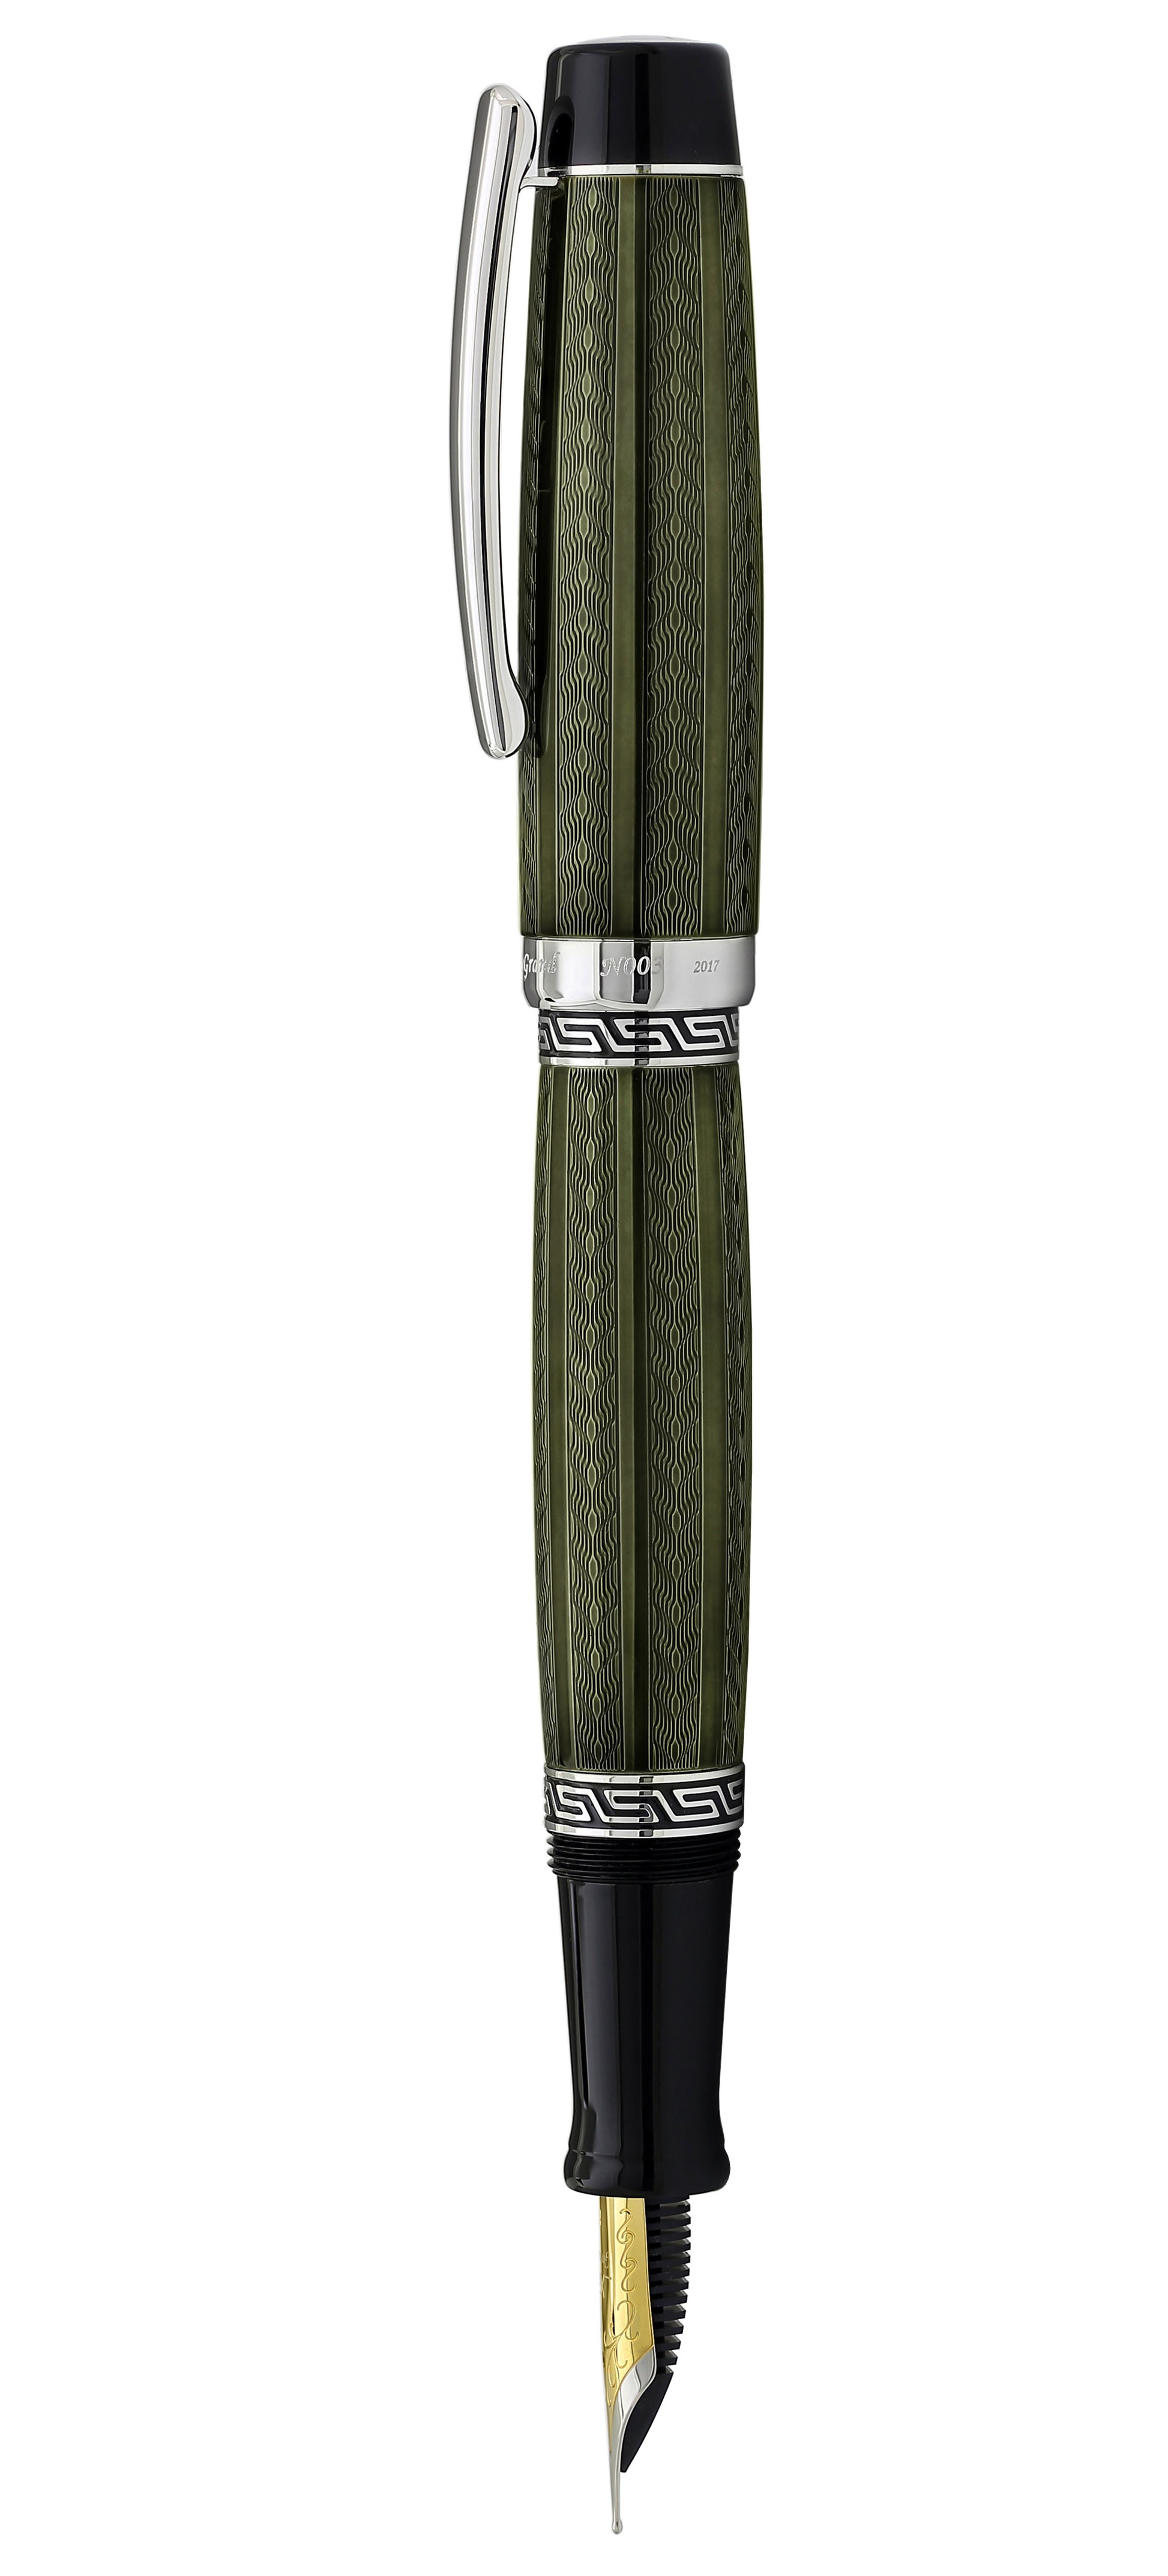 Xezo - Side view of the Maestro LeGrand Moldavite F fountain pen